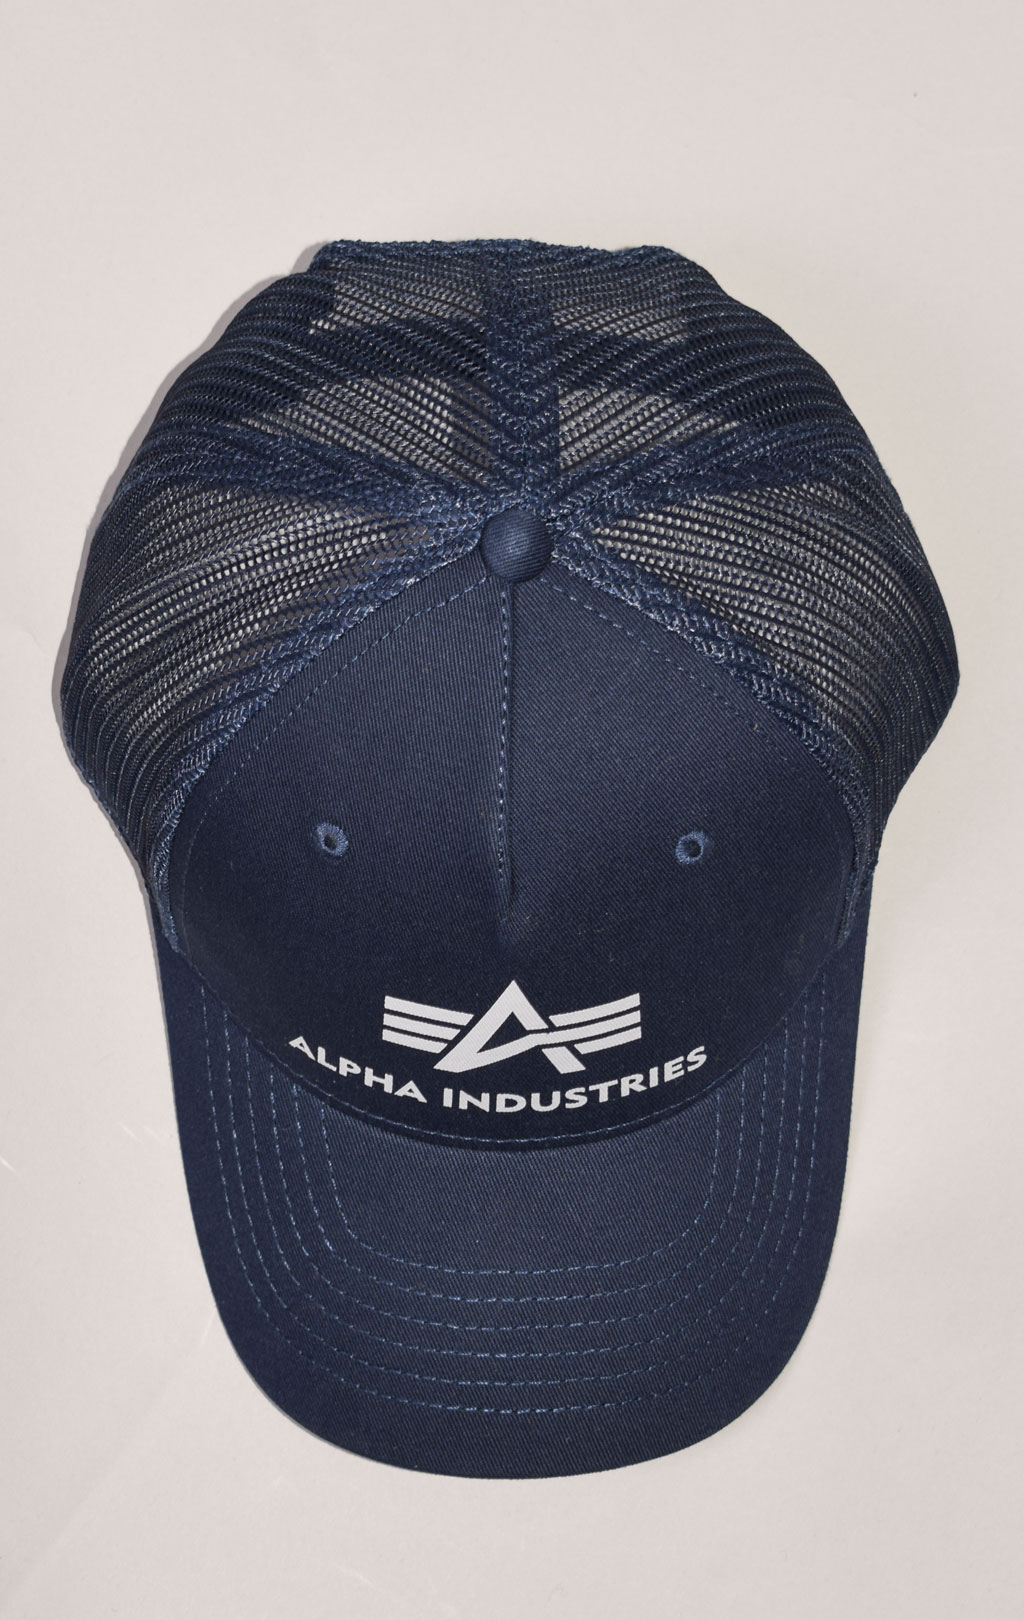 Бейсболка ALPHA INDUSTRIES BASIC Интернет-магазине CAP купить blue, в TRUCKER rep